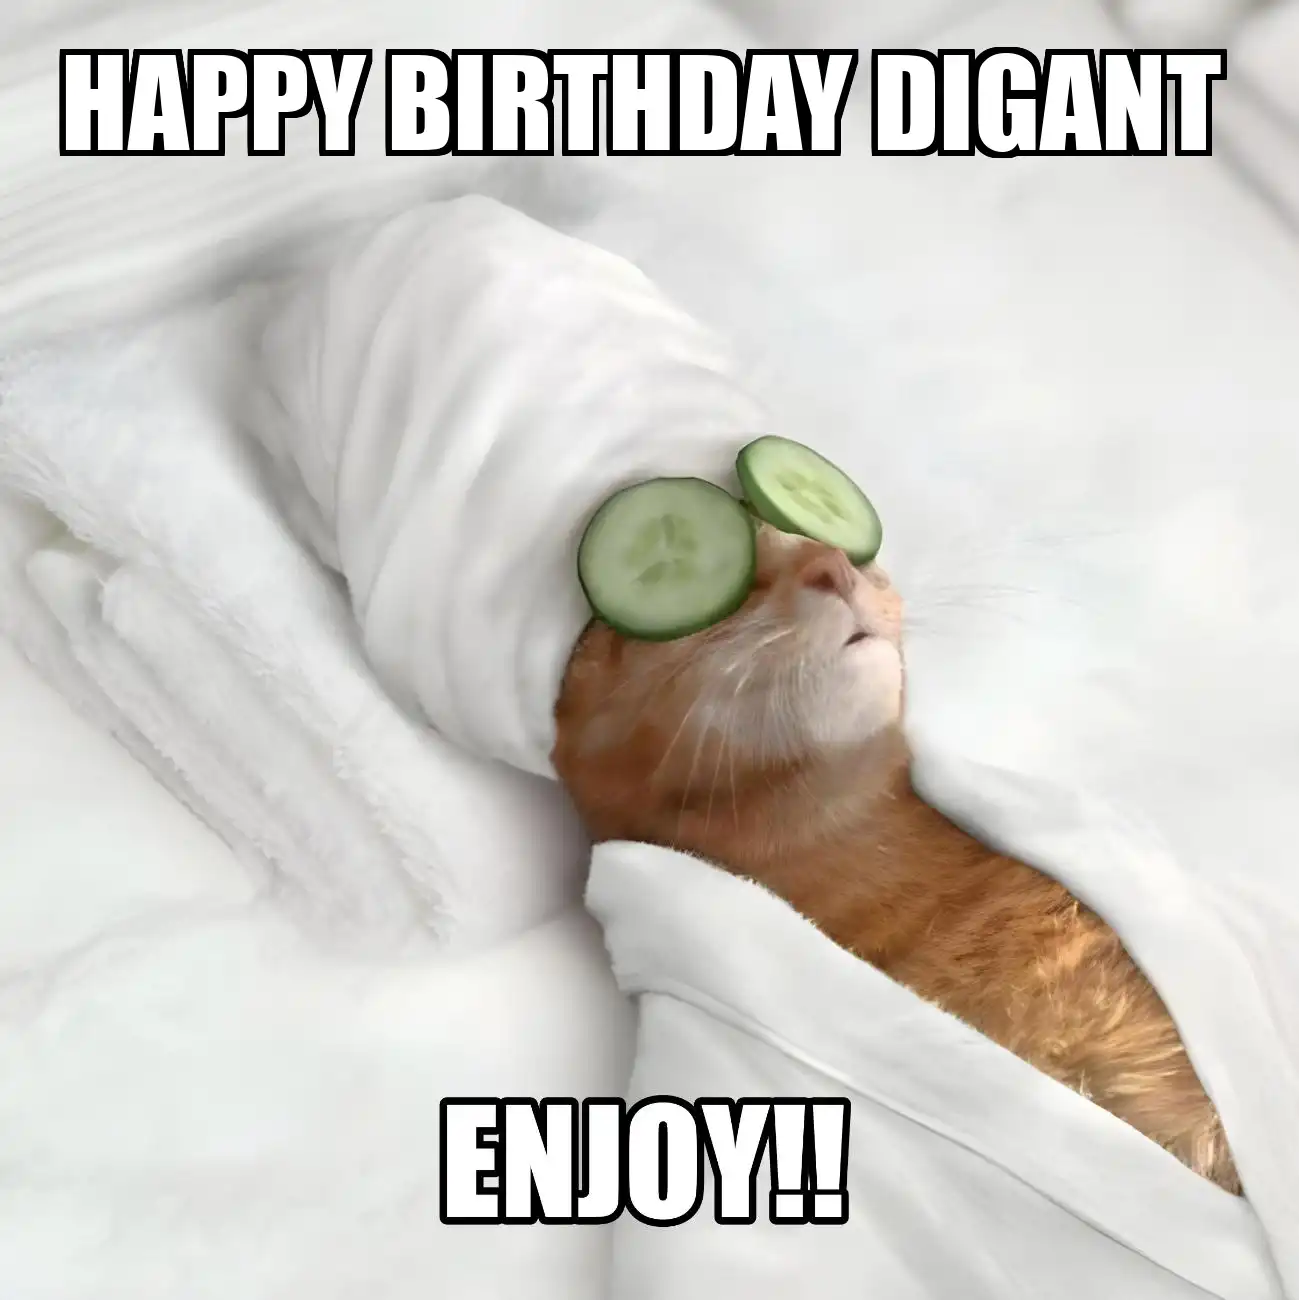 Happy Birthday Digant Enjoy Cat Meme